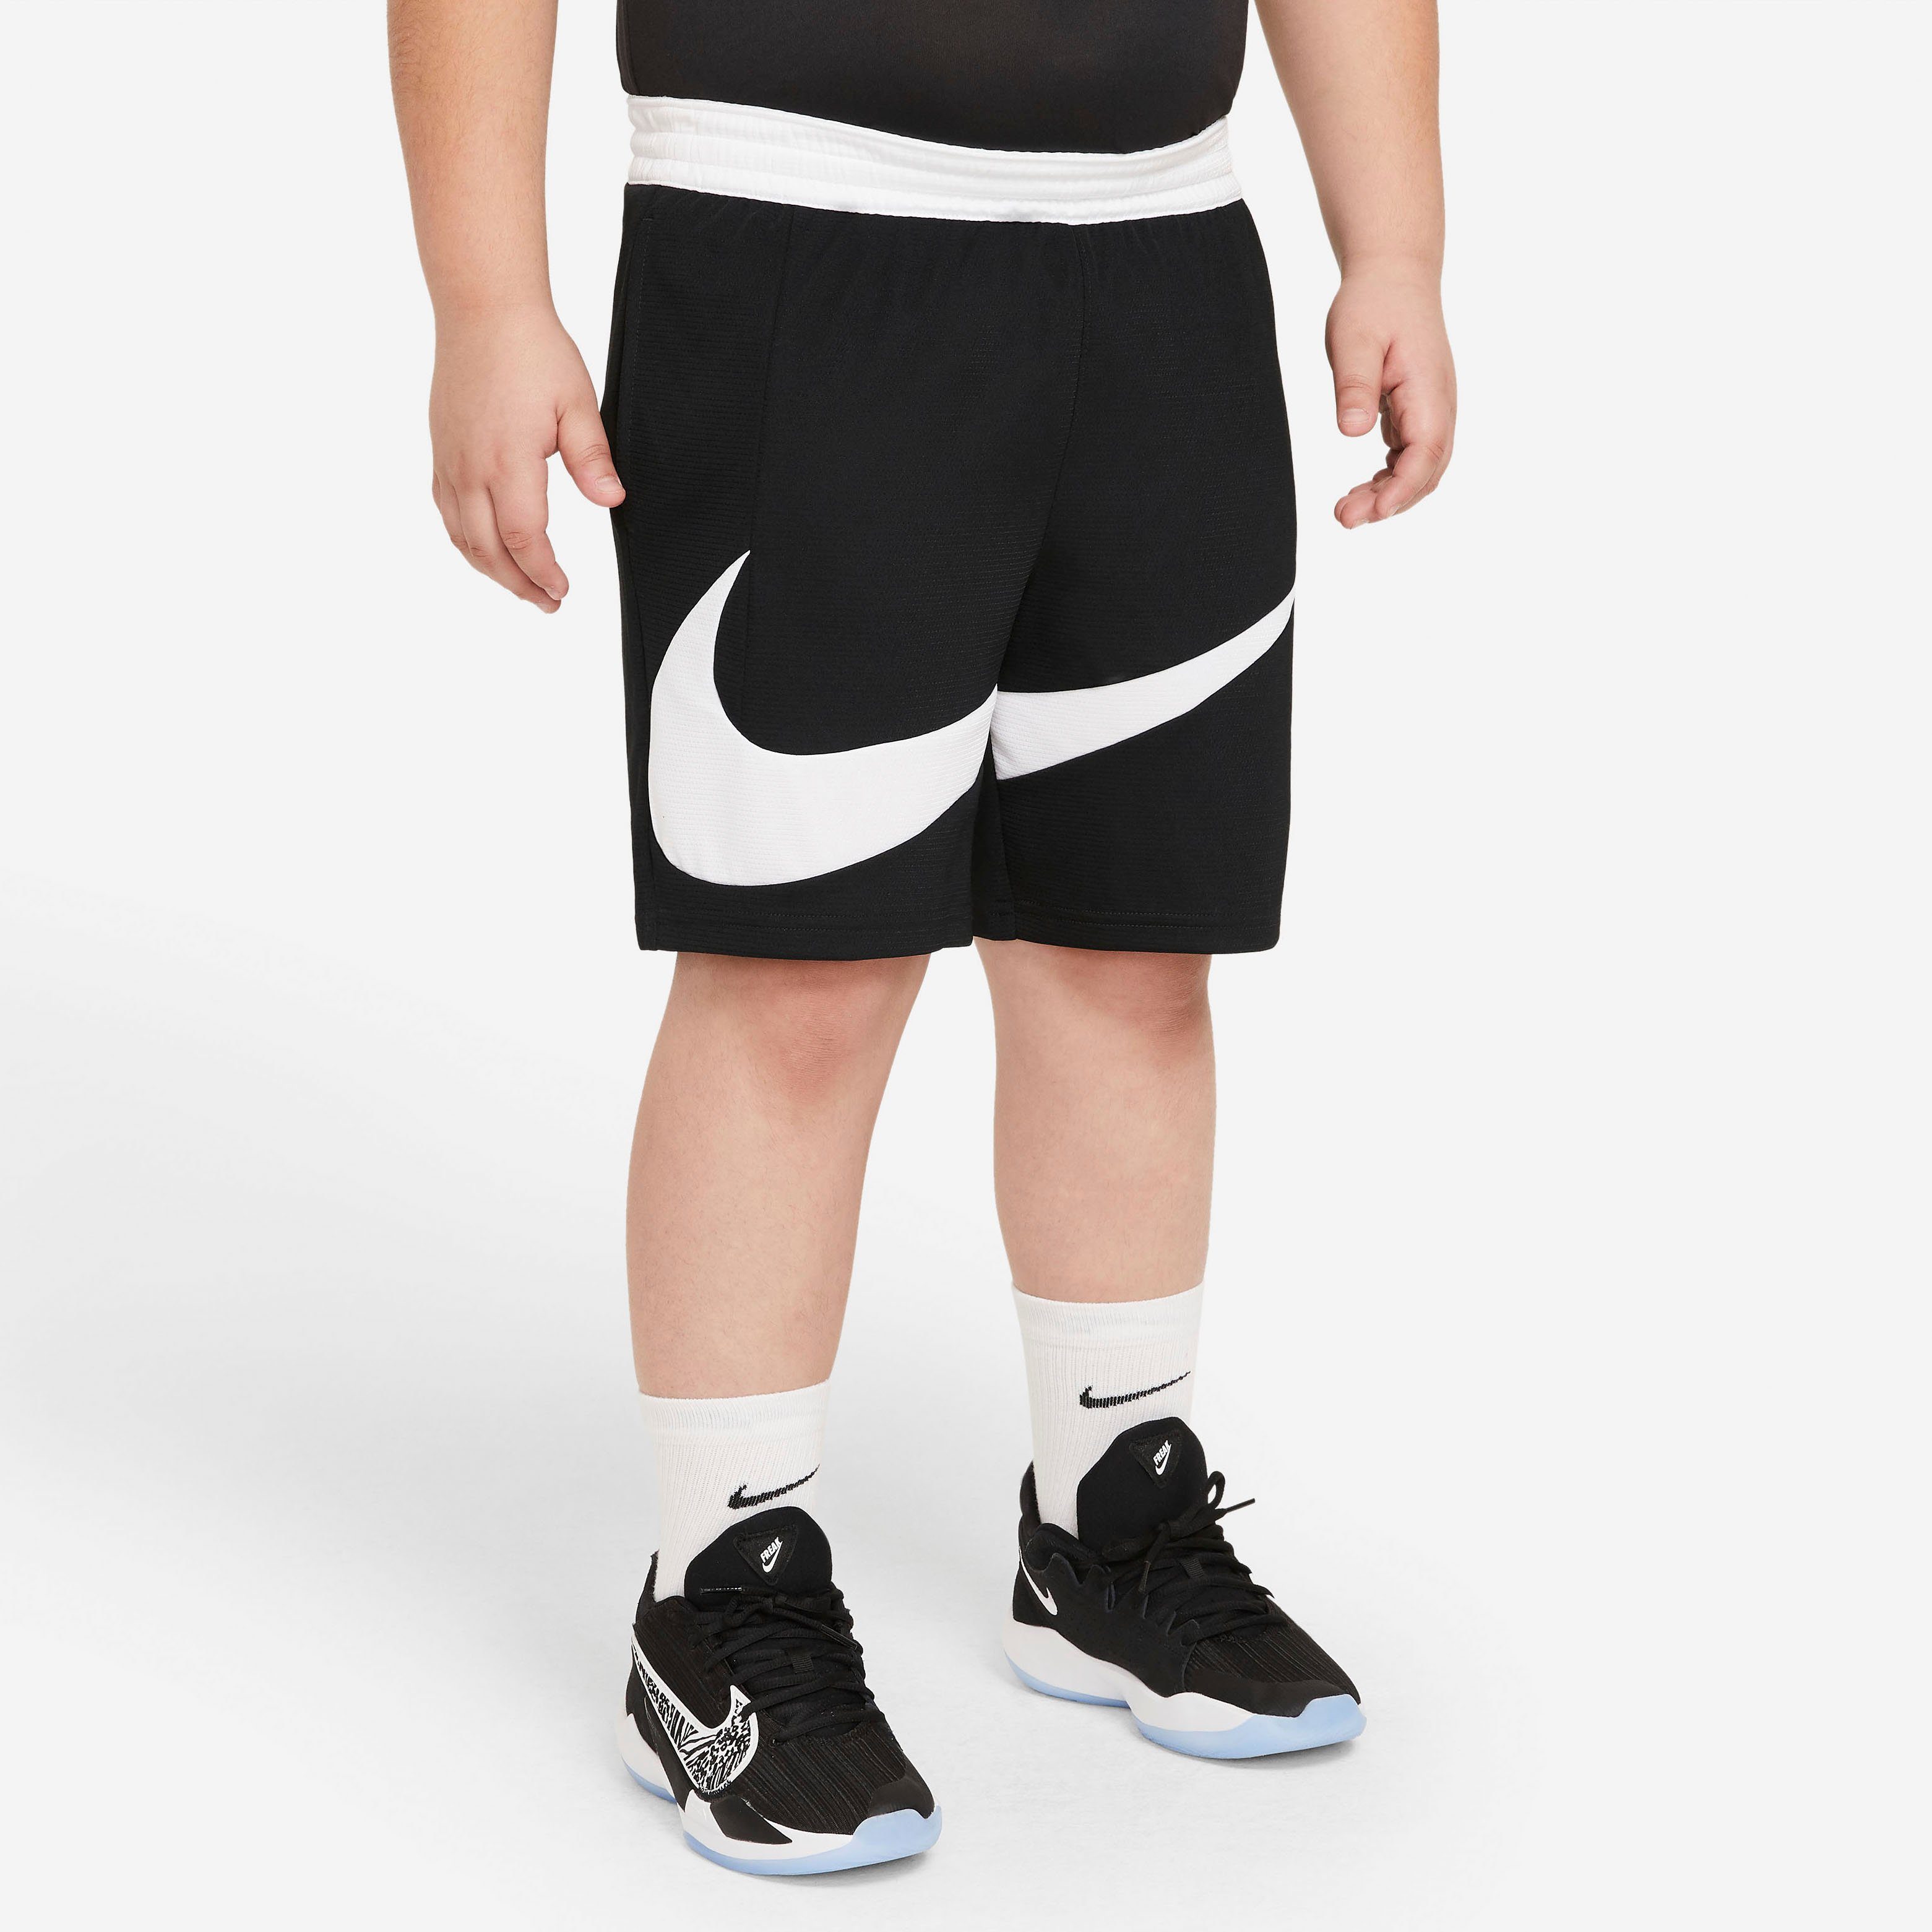 Kurze Nike Jungen Hosen online kaufen | OTTO